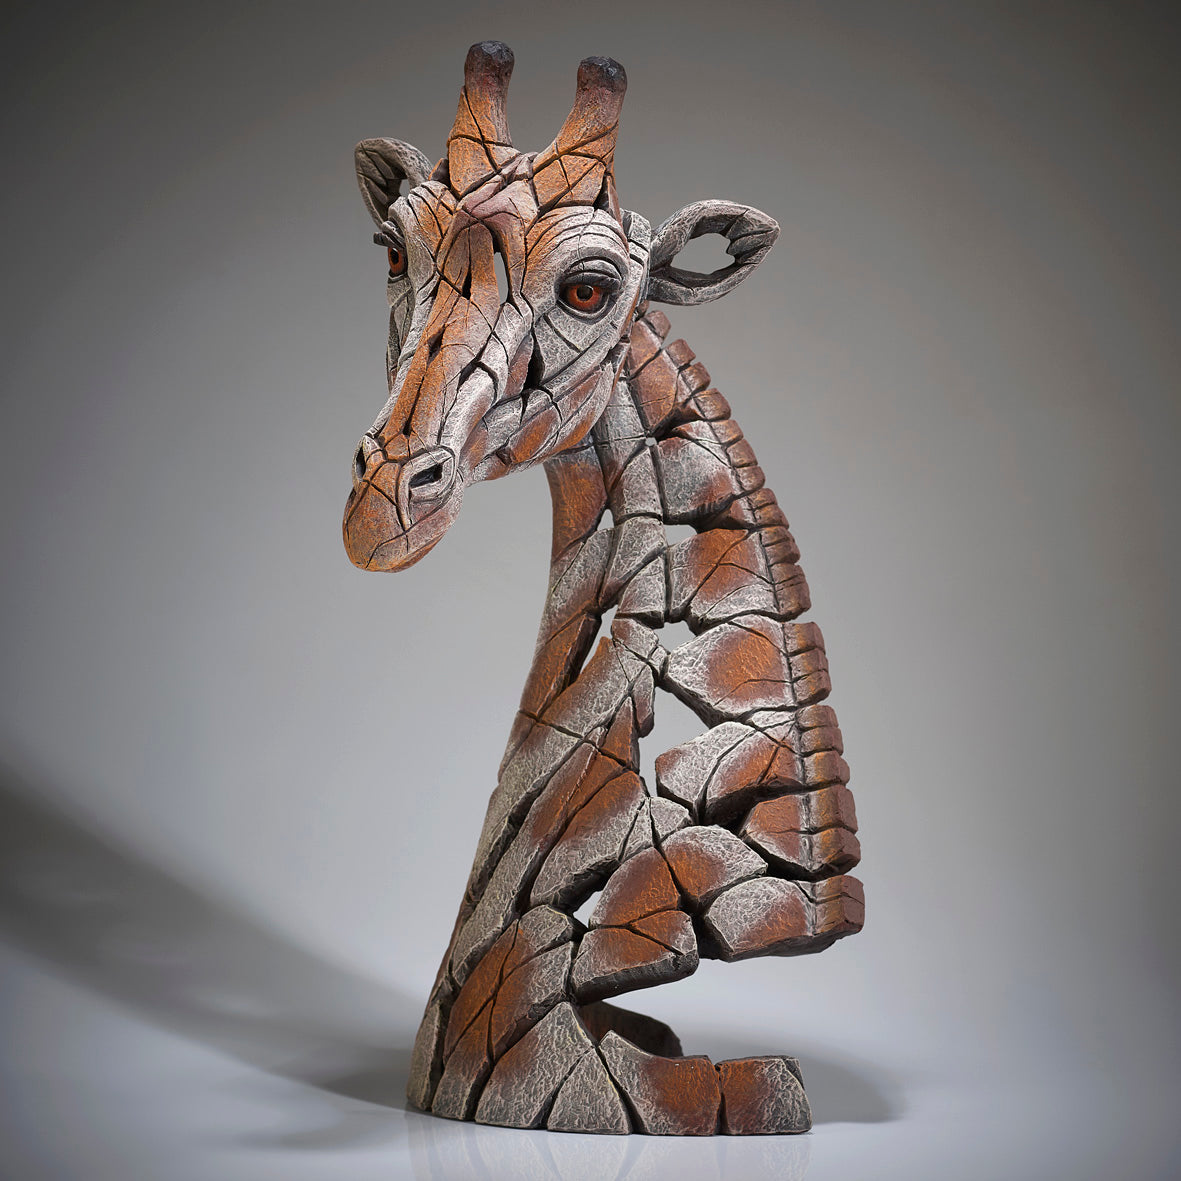 Giraffe Bust from Edge Sculpture by Matt Buckley copyright Artworx